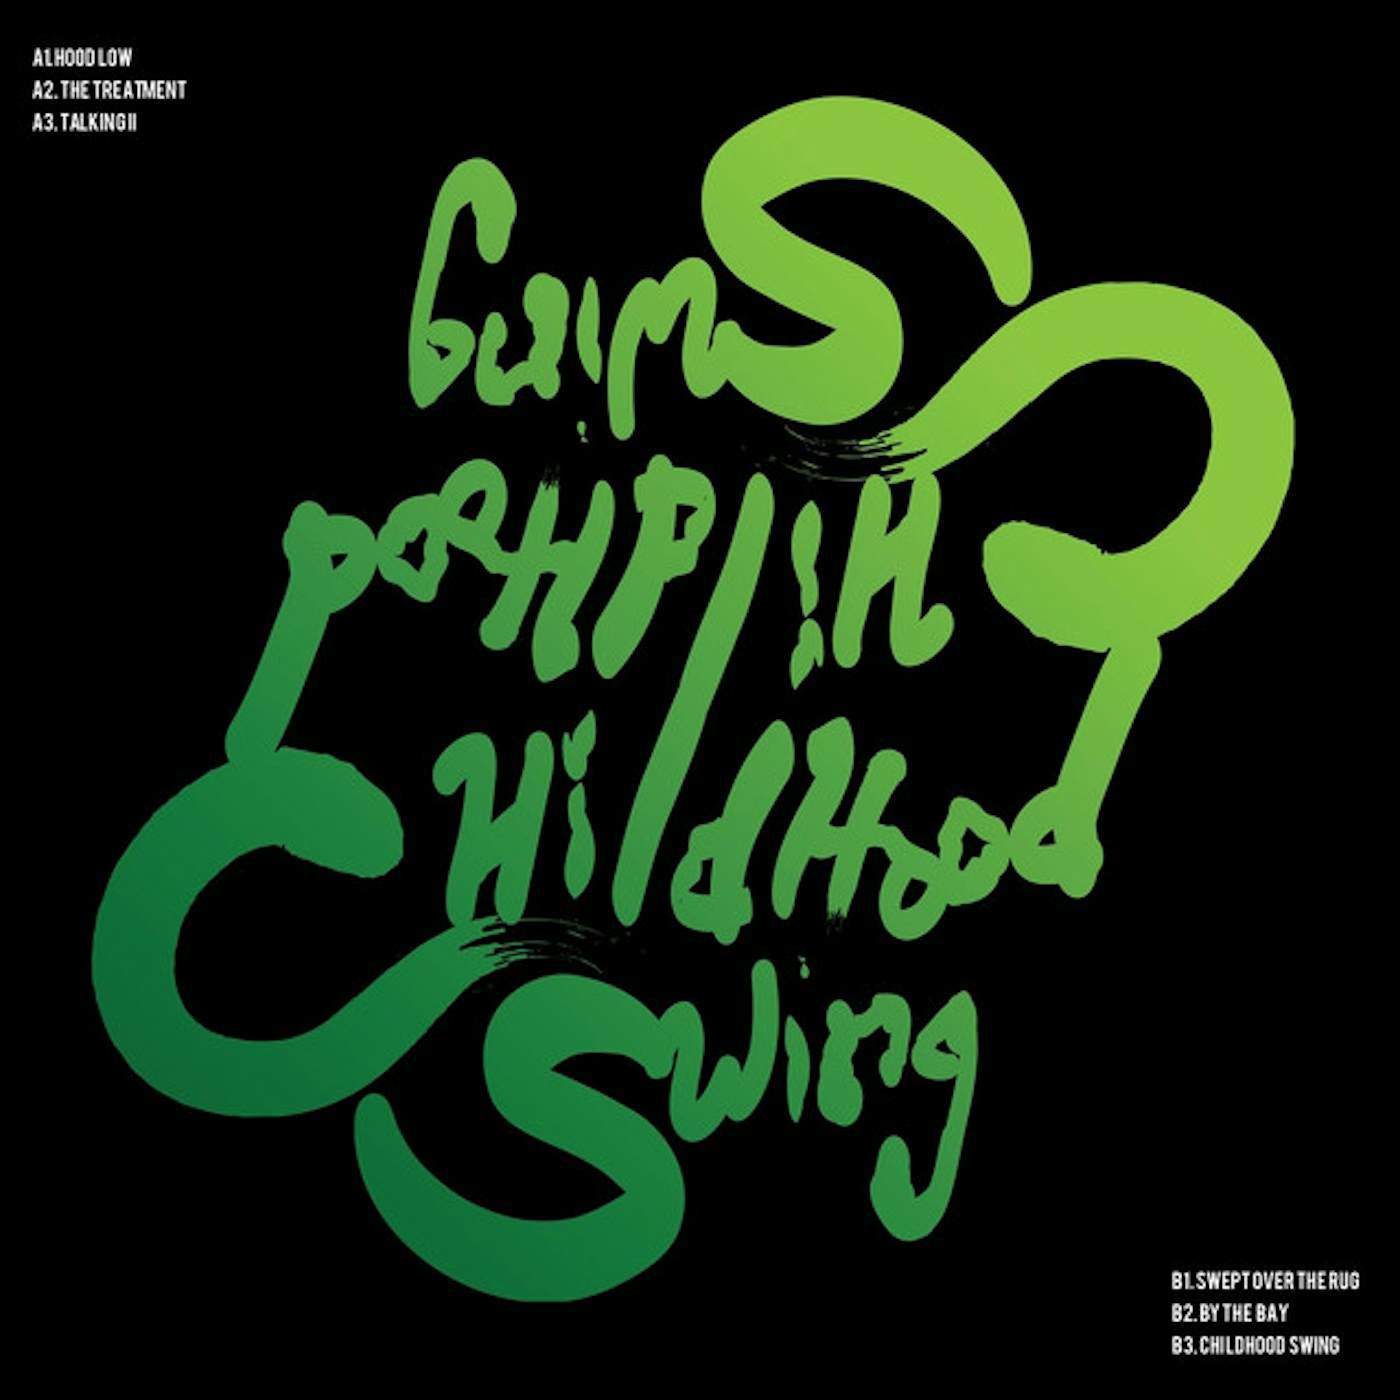 Tairiq & Garfield Childhood Swing Vinyl Record